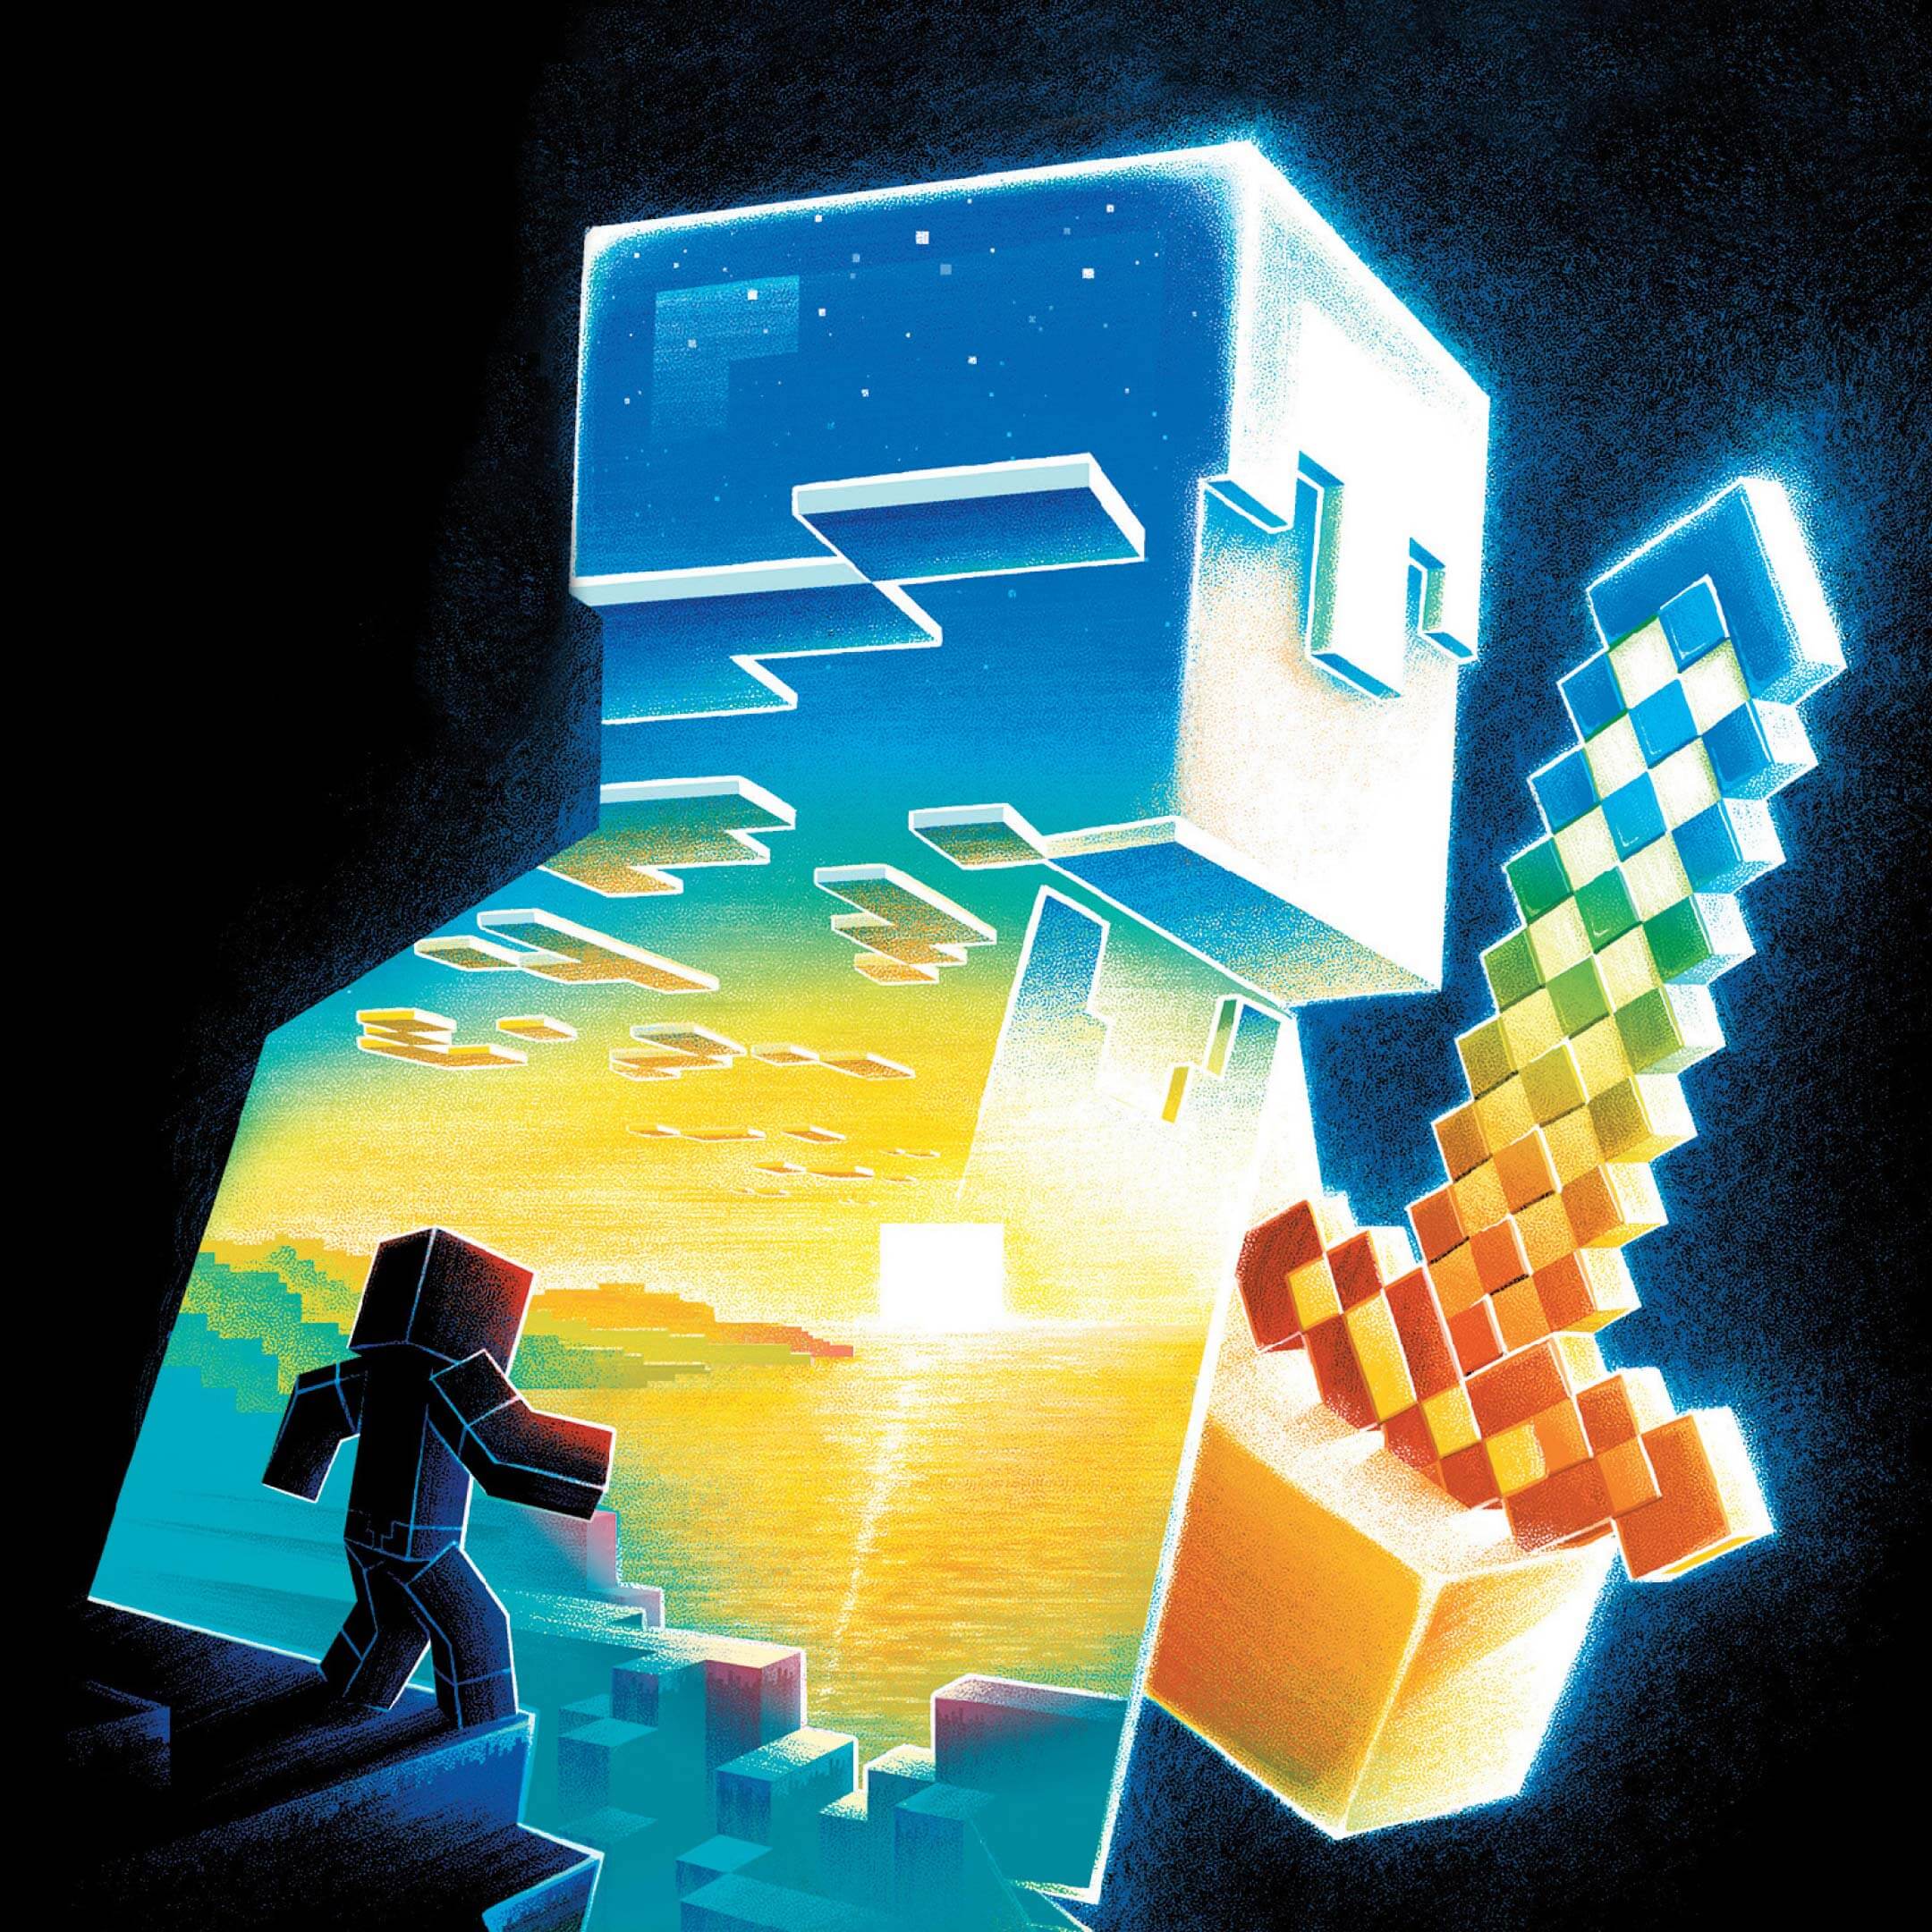 Фрагмент обложки книги Макса Брукса «Minecraft: Остров», художник Ian Wilding